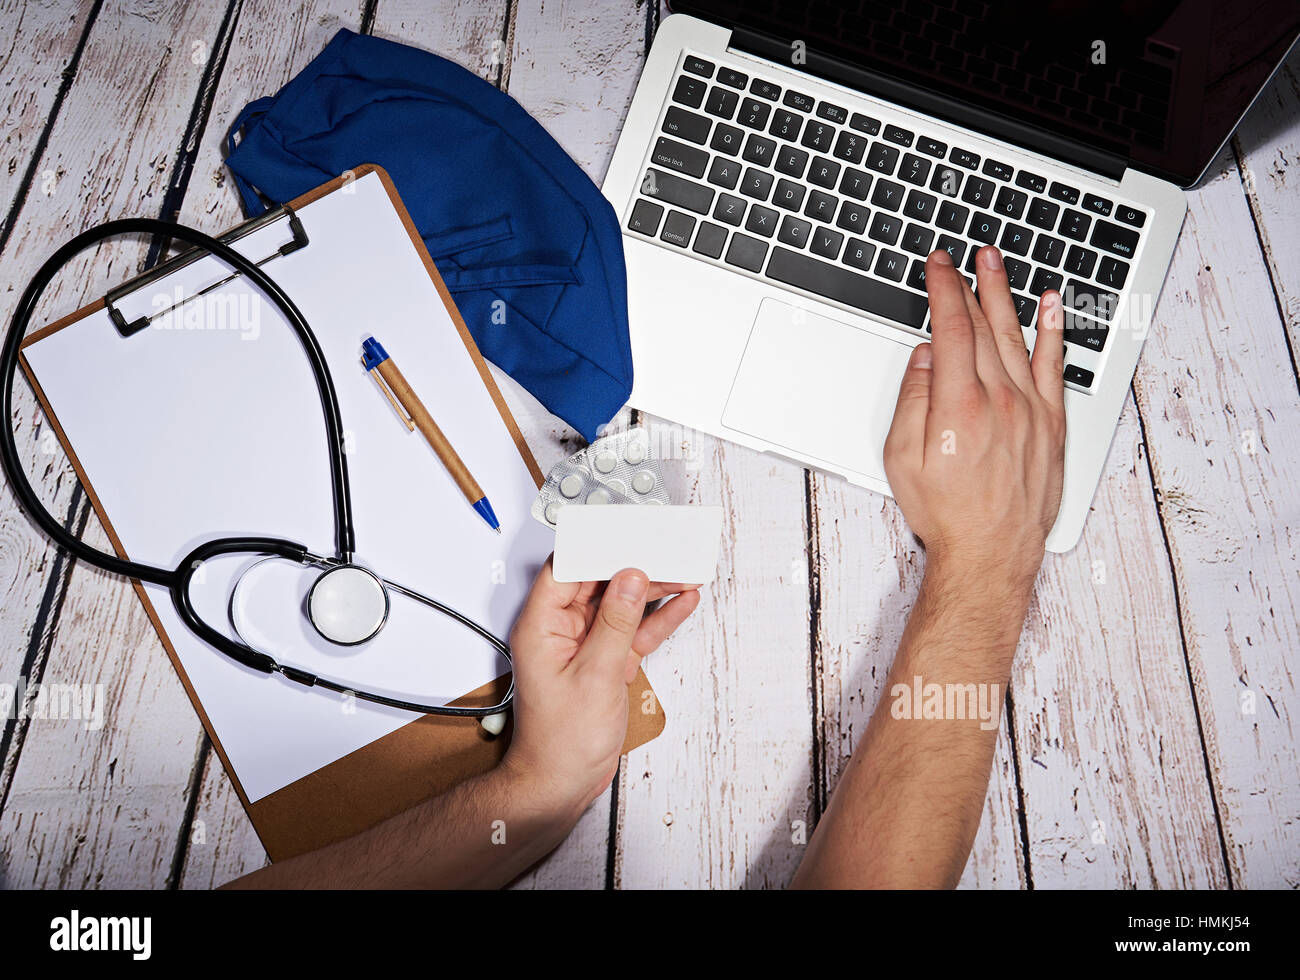 medizinischen Dienst online mit Kreditkarte bezahlen Stockfoto